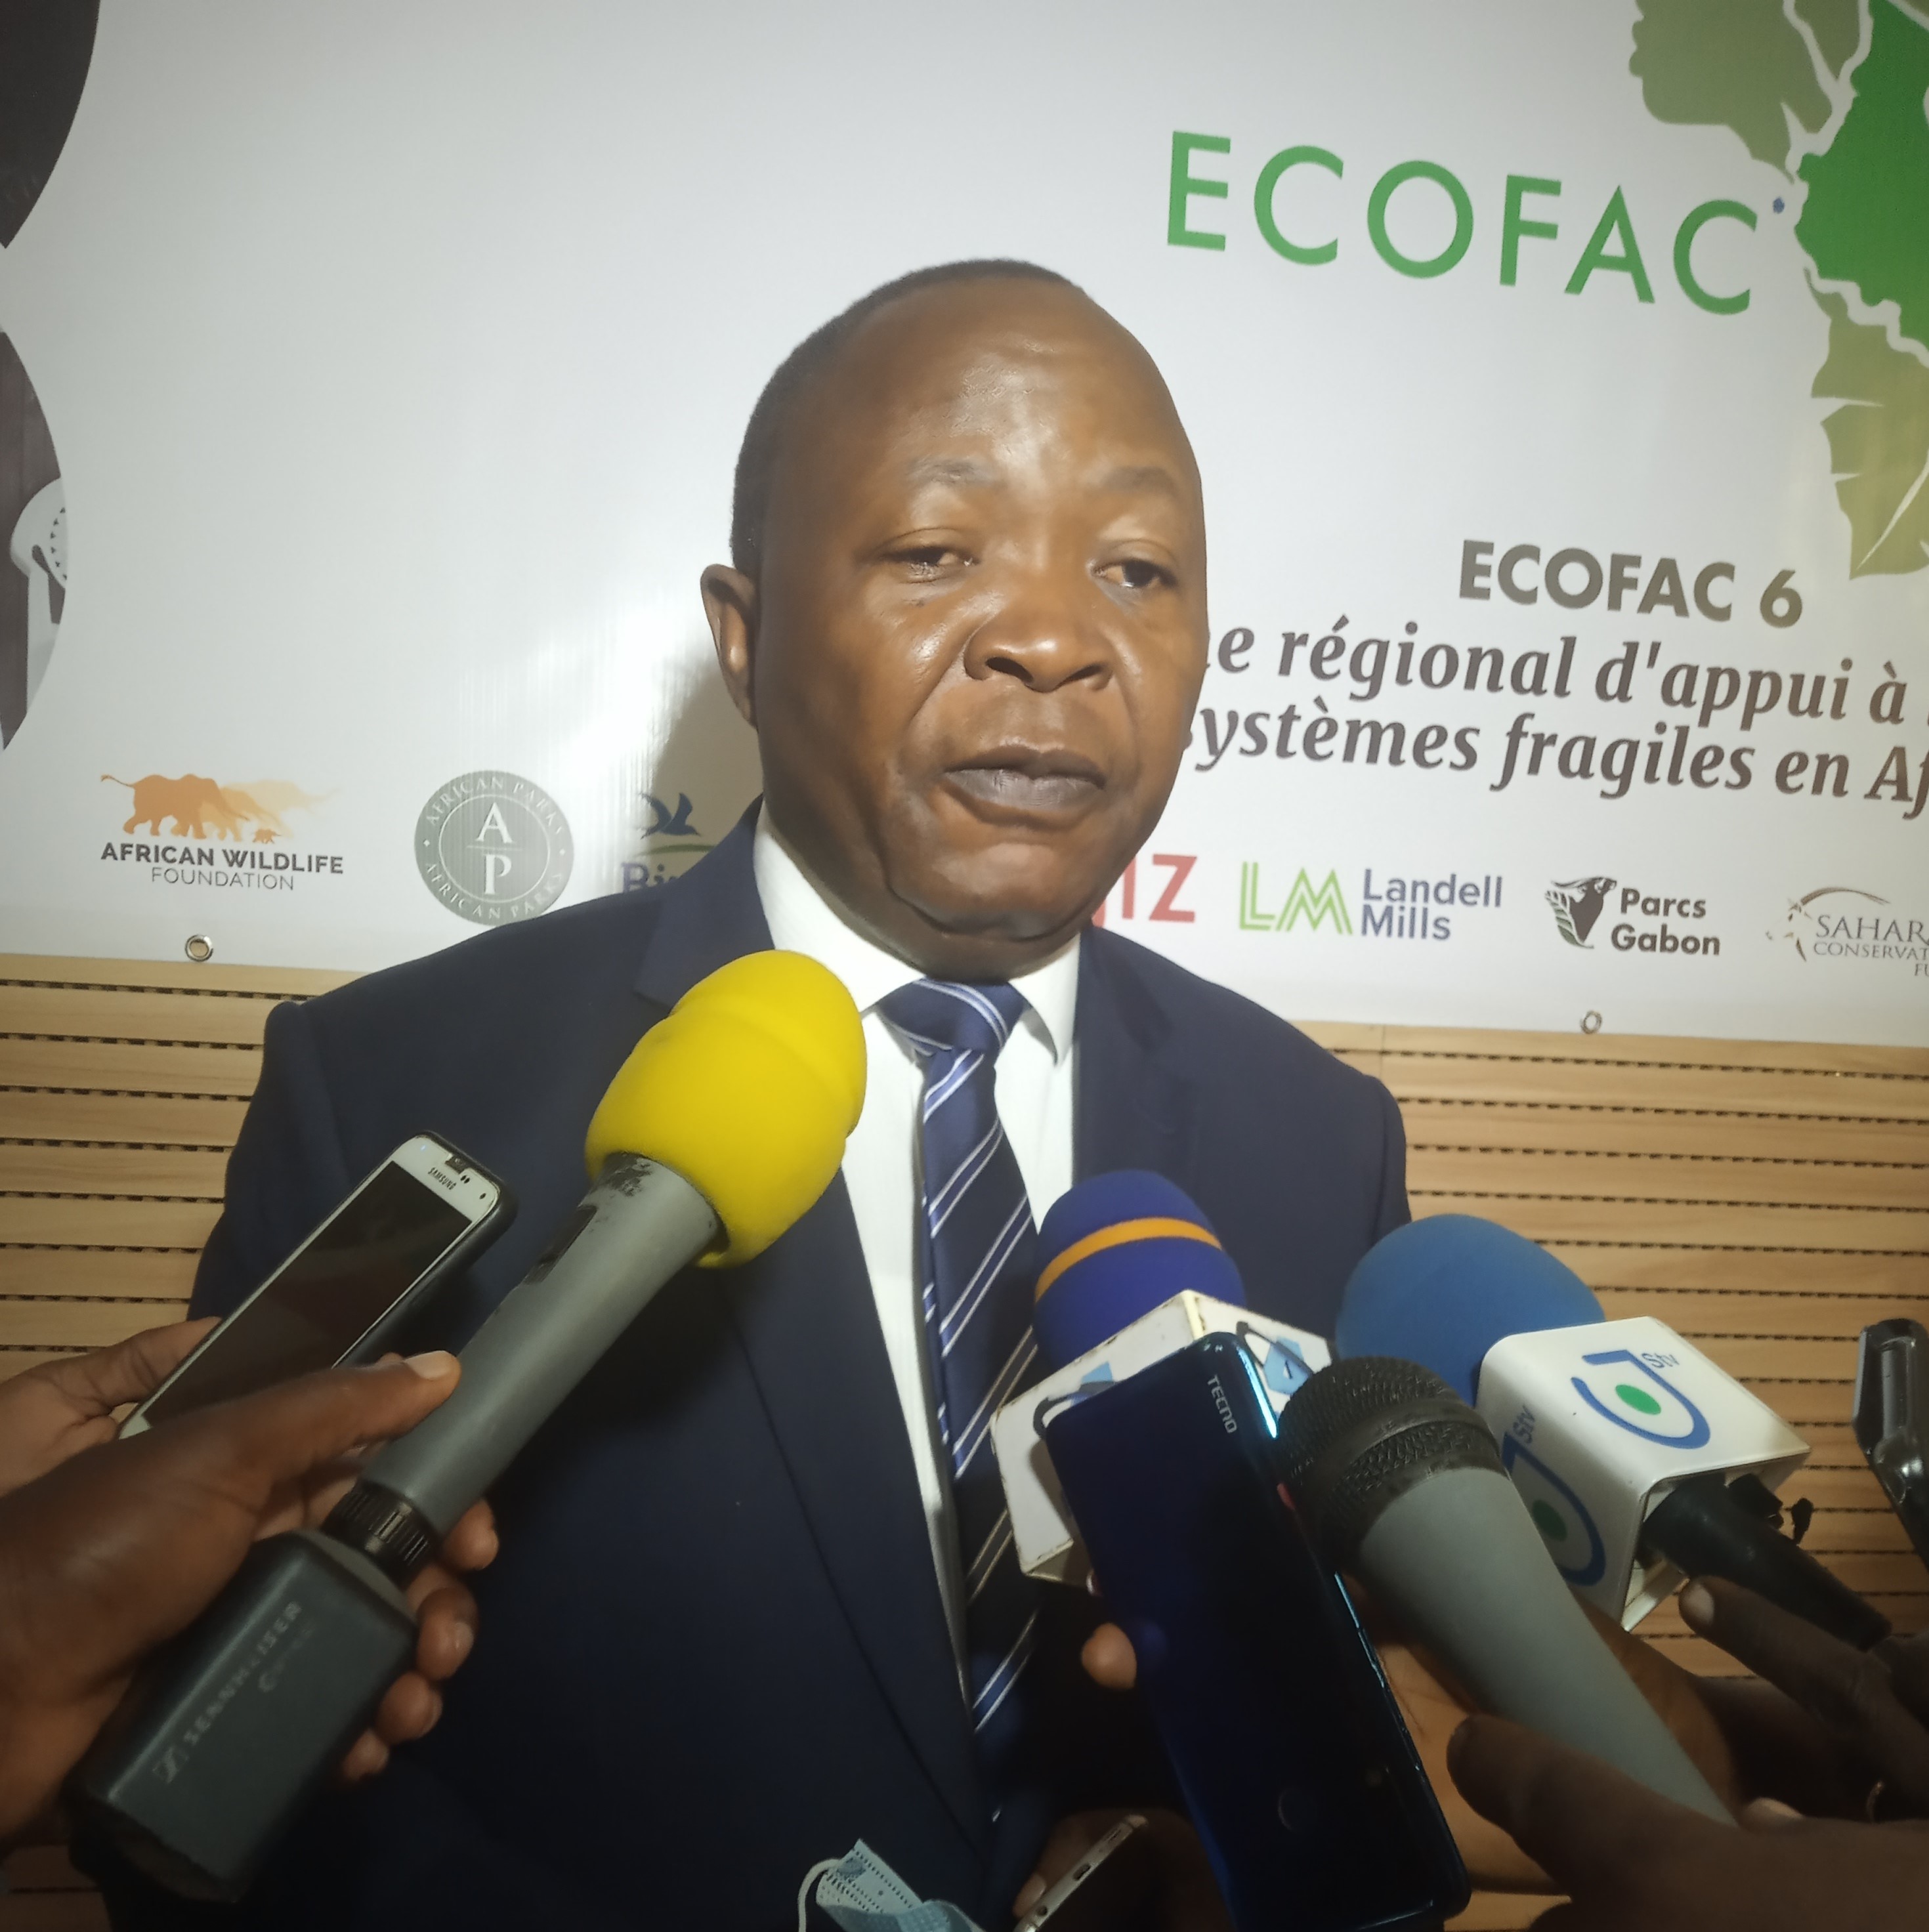 Comité de pilotage du programme régional d’appui à la biodiversité et des écosystèmes fragilisés en Afrique Centrale. La première édition s’est ouverte ce mardi 4 mai 2021 à Douala au Cameroun